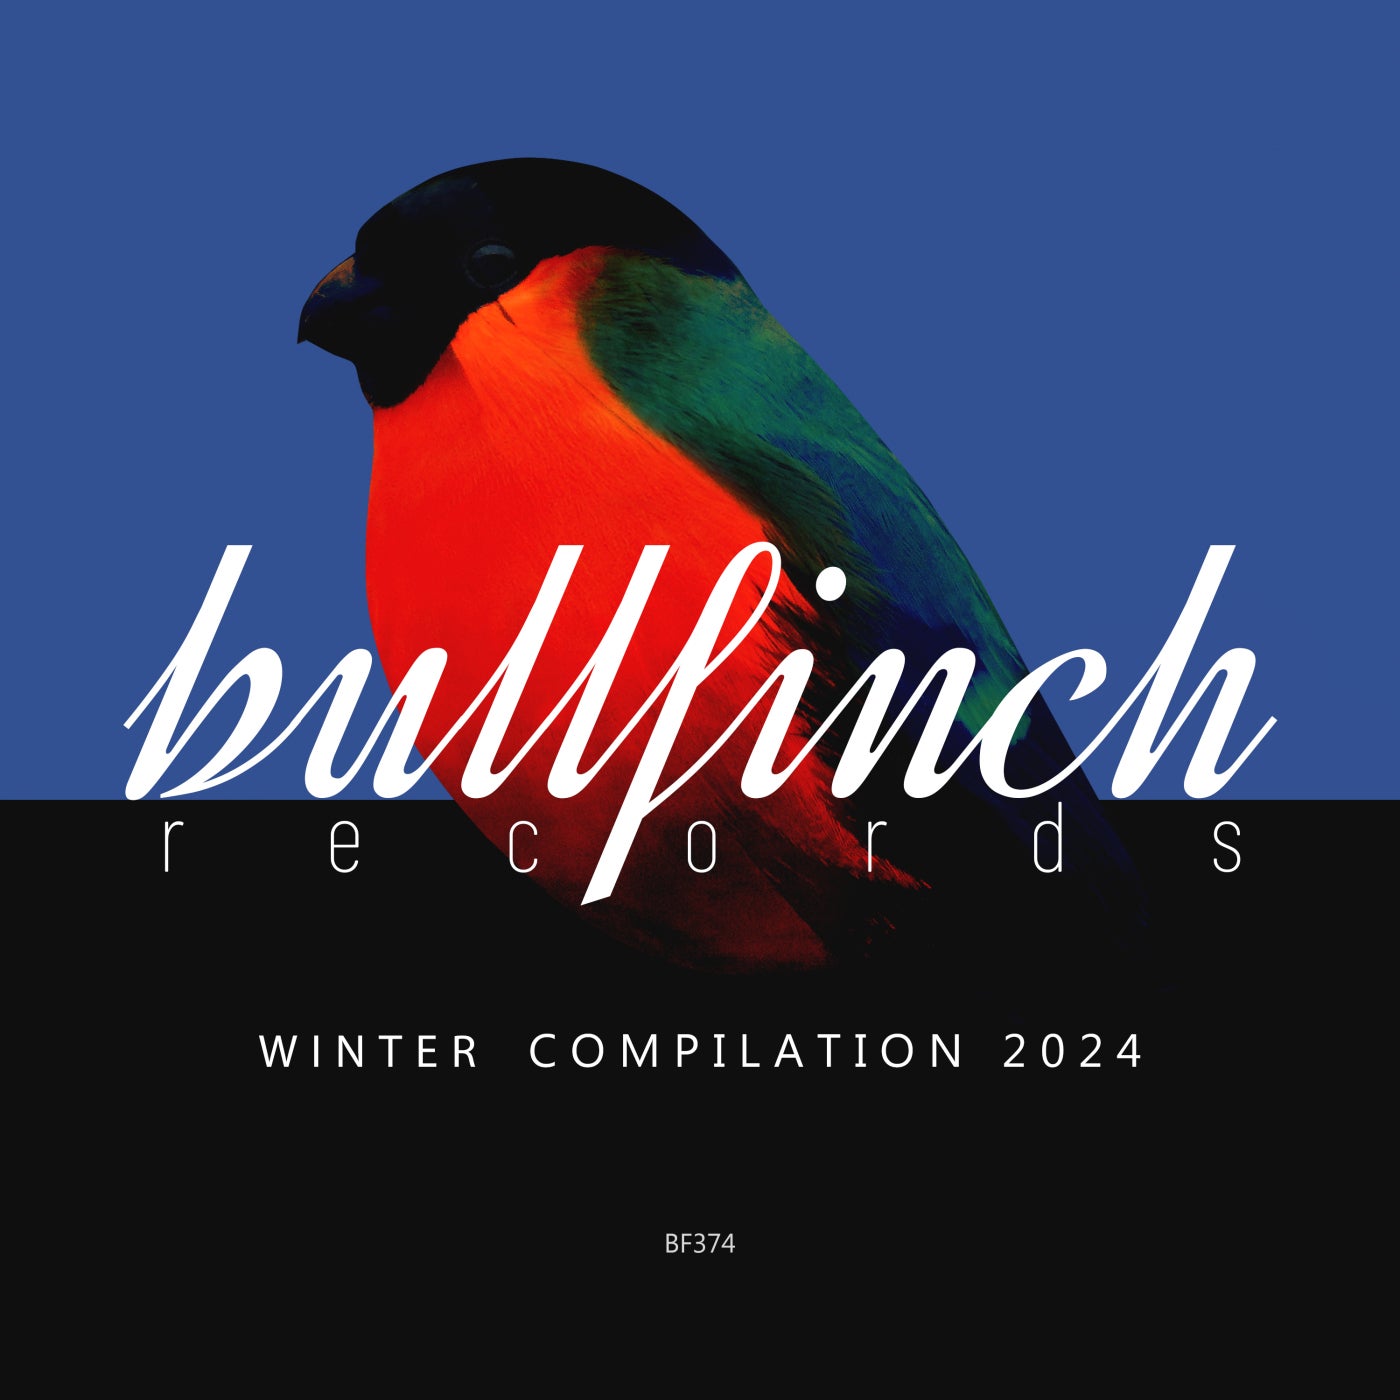 VA Bullfinch Winter 2024 Compilation BF374 deeptech.house